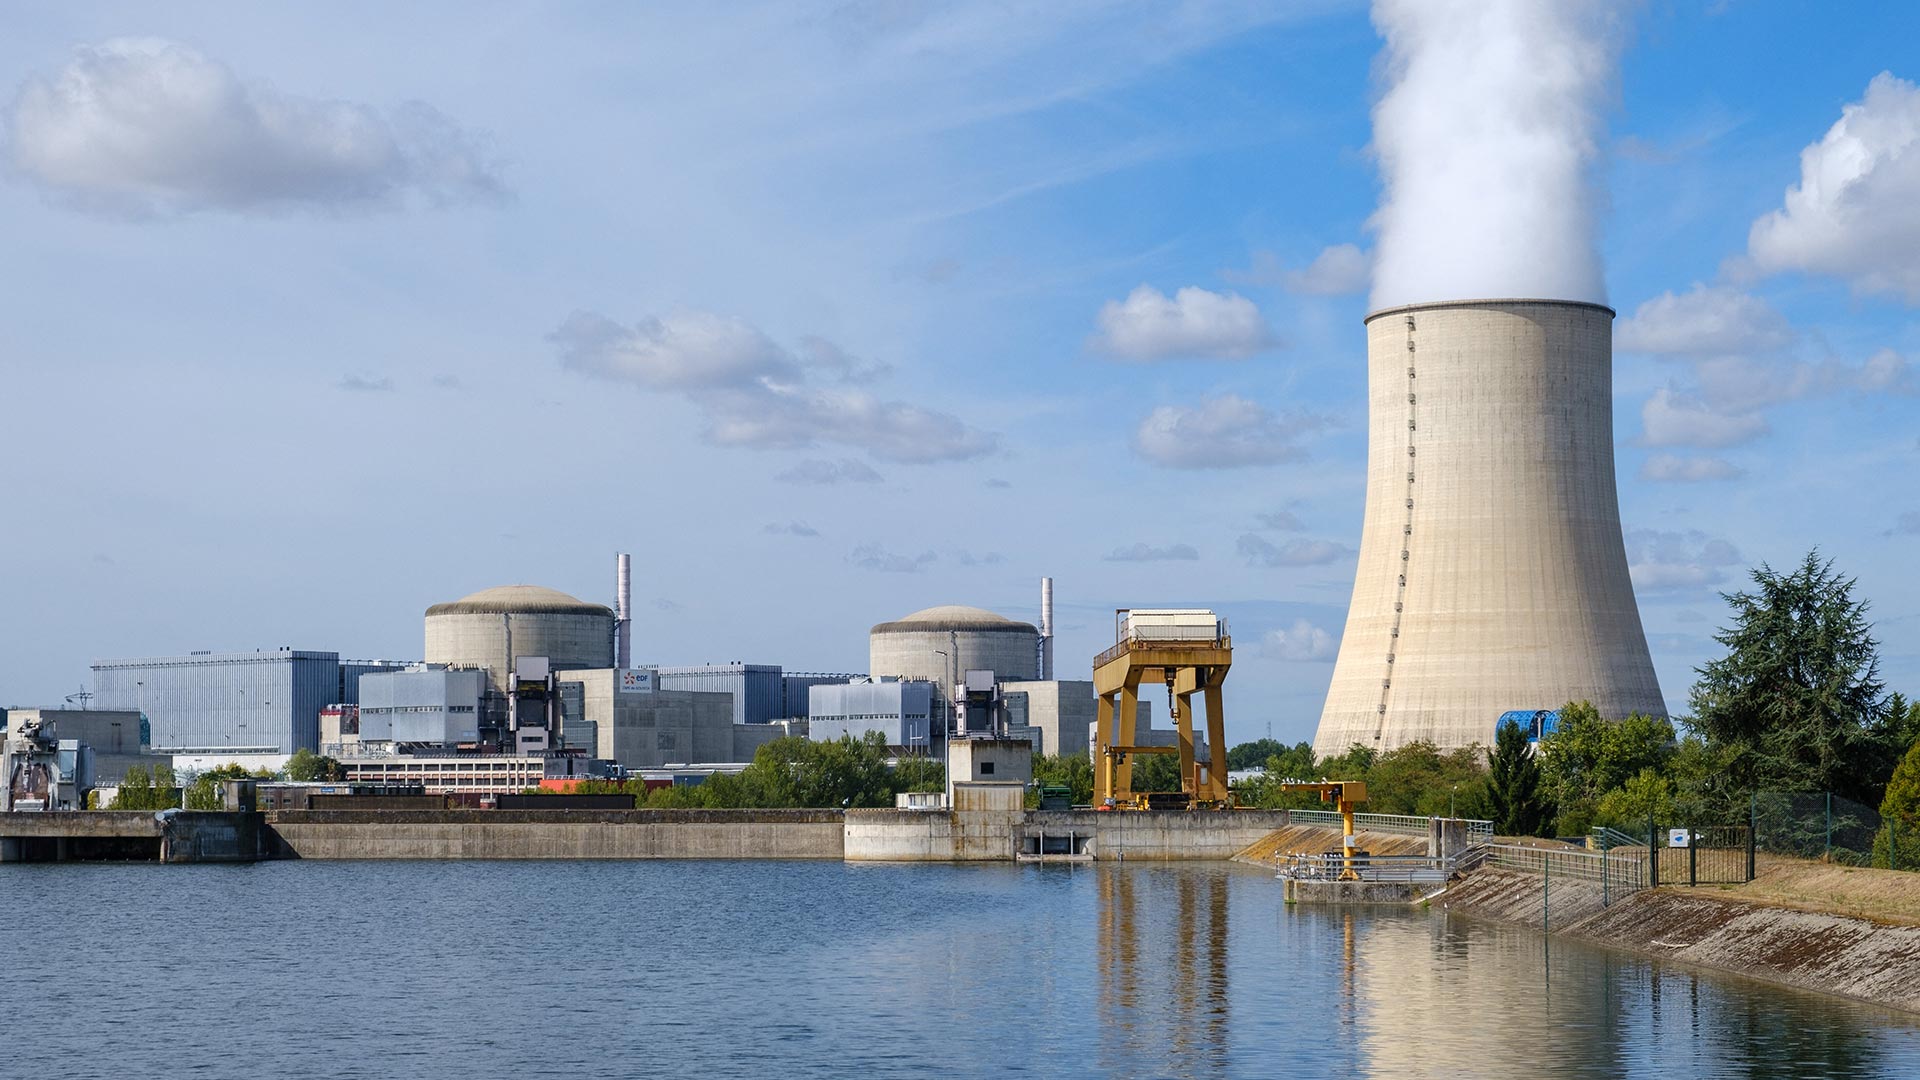 EDF Atomkraftwerk Golfech | picture alliance / abaca